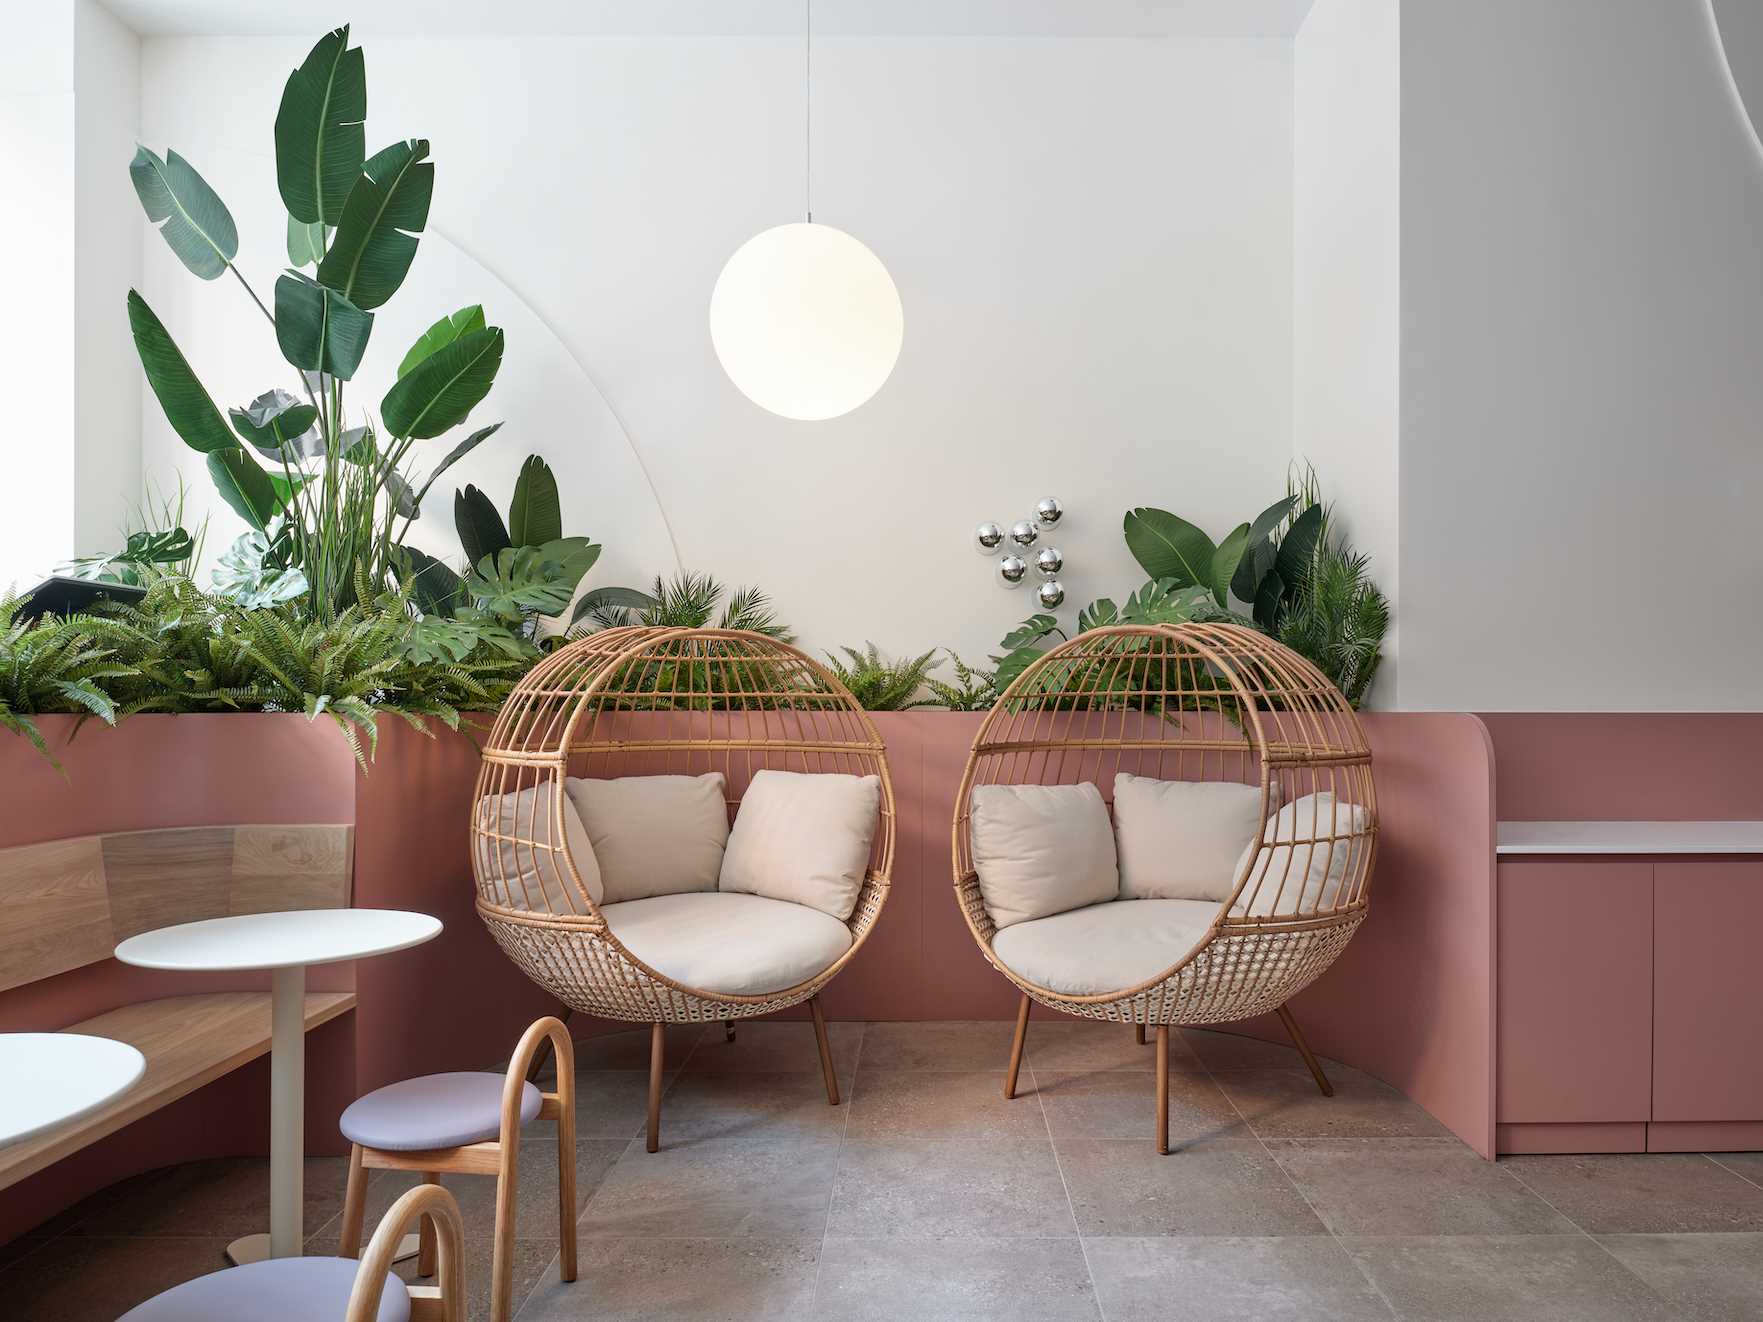 کافه ای مدرن با گیاهان، صندلی های دنج و رنگ های ملایم.